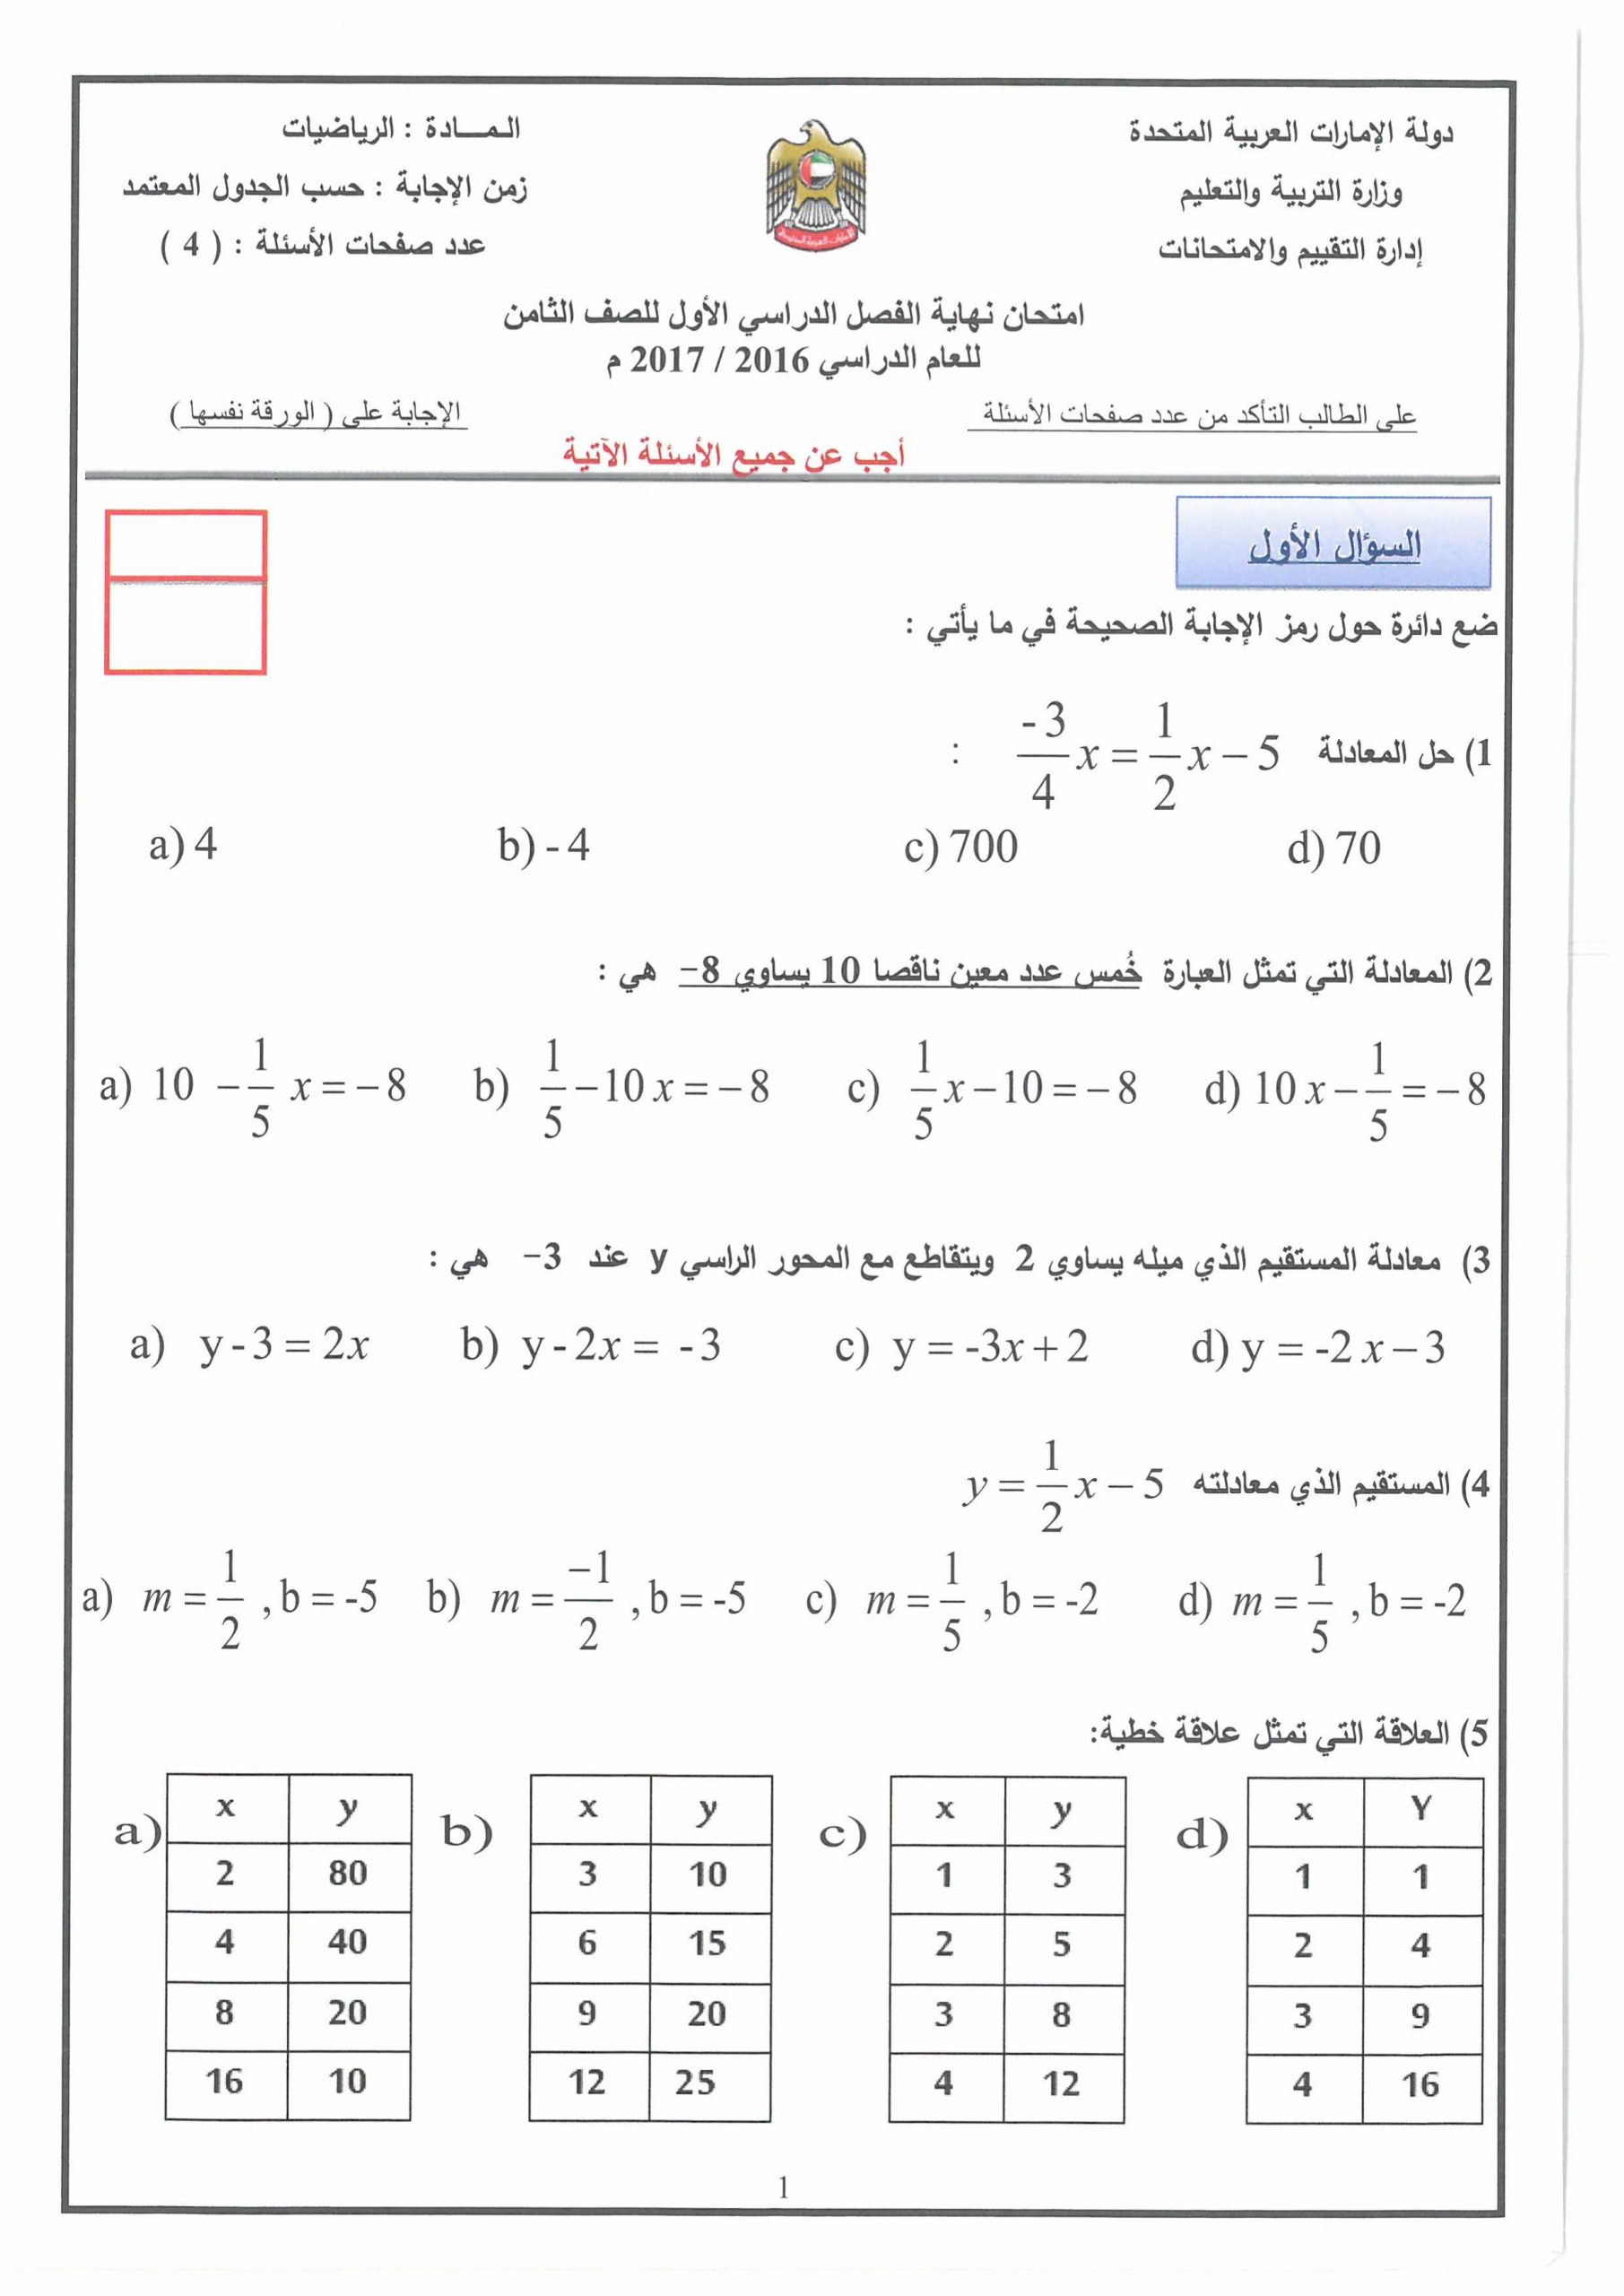 امتحان نهاية الفصل الدراسي الاول 2016-2017 الصف الثامن مادة الرياضيات المتكاملة